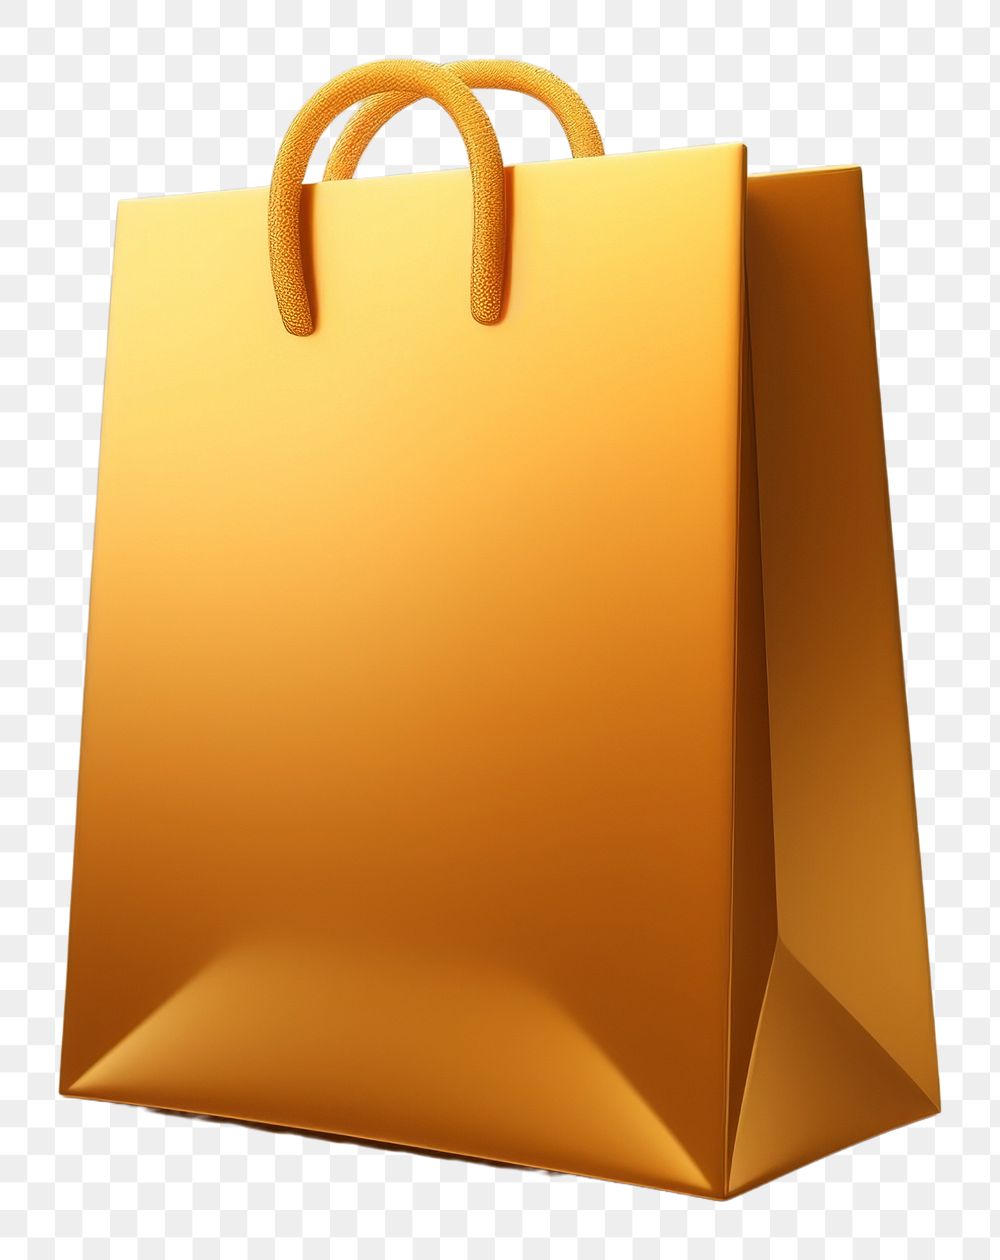 PNG A minimal shopping bag icon handbag gold consumerism.